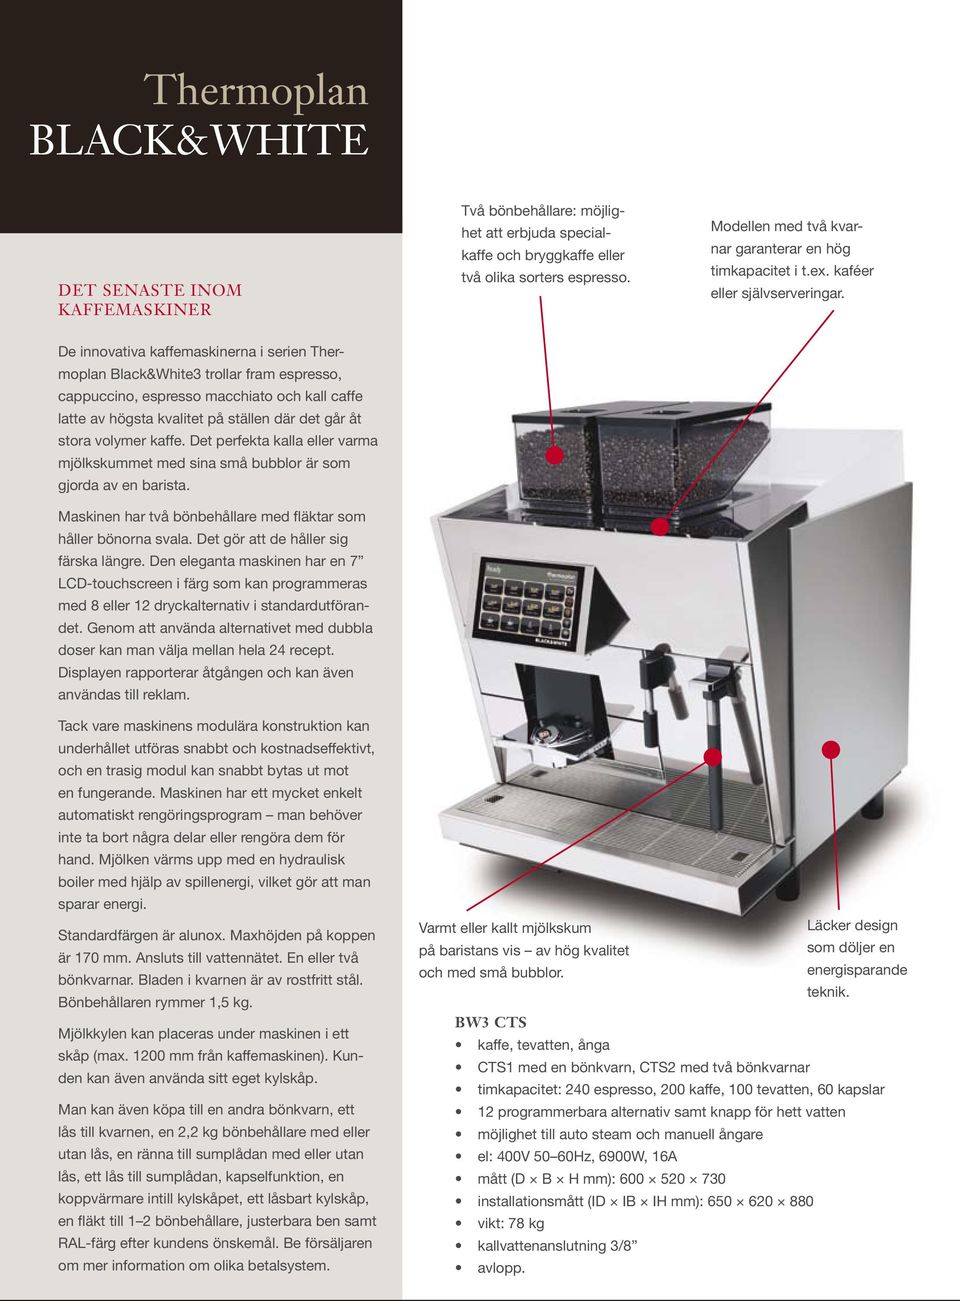 De innovativa kaffemaskinerna i serien Thermoplan Black&White3 trollar fram espresso, cappuccino, espresso macchiato och kall caffe latte av högsta kvalitet på ställen där det går åt stora volymer